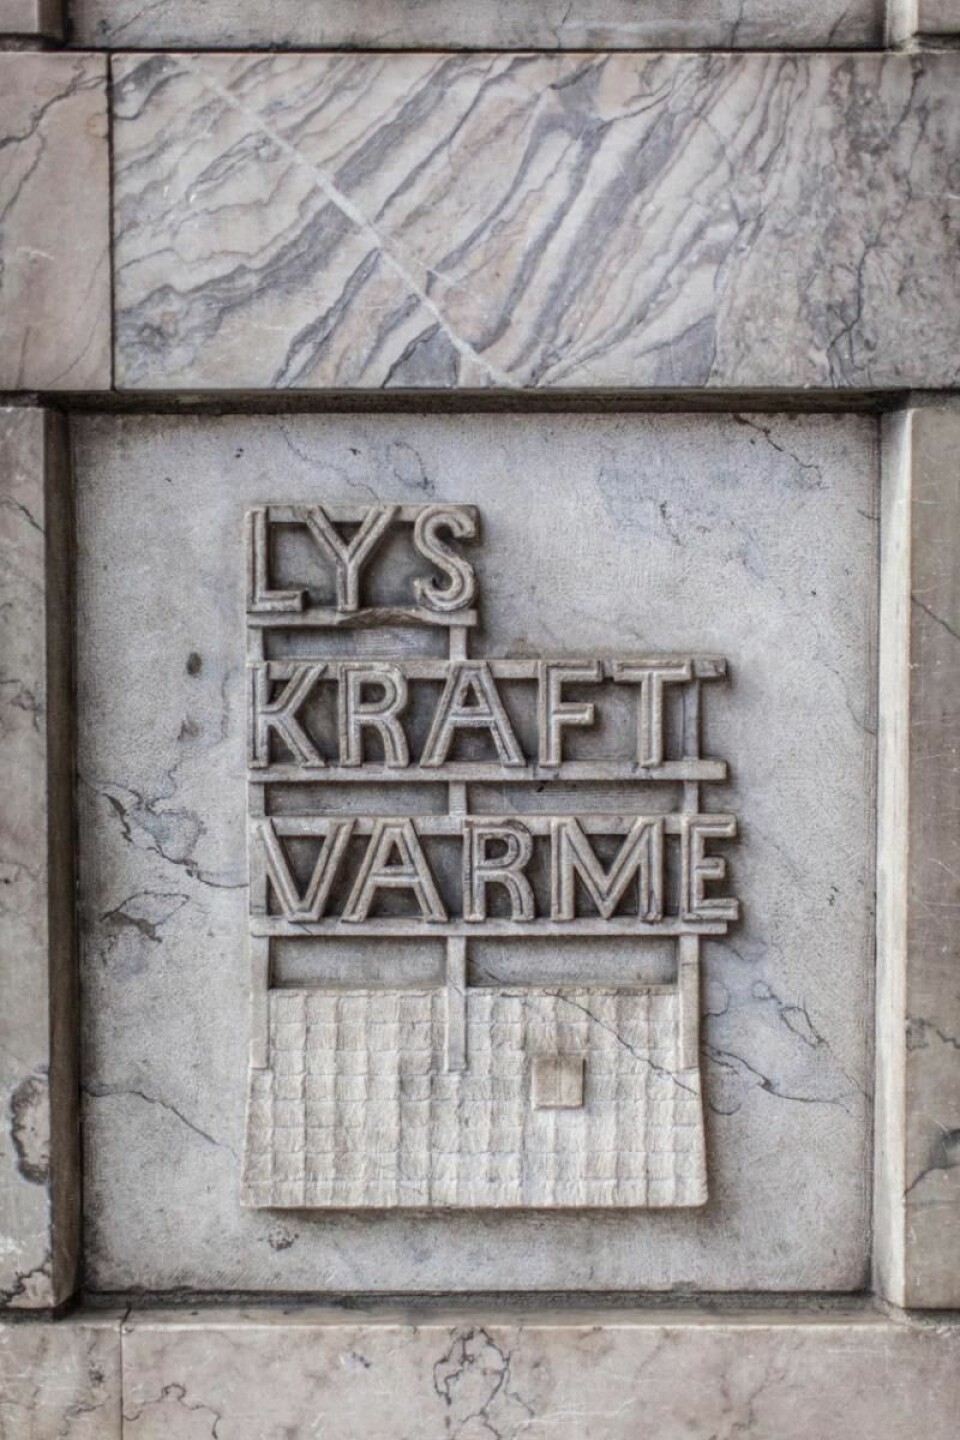 Fasaden er utsmykket med verdiordene til Oslo Lysverker. (Foto: Chris Aadland)